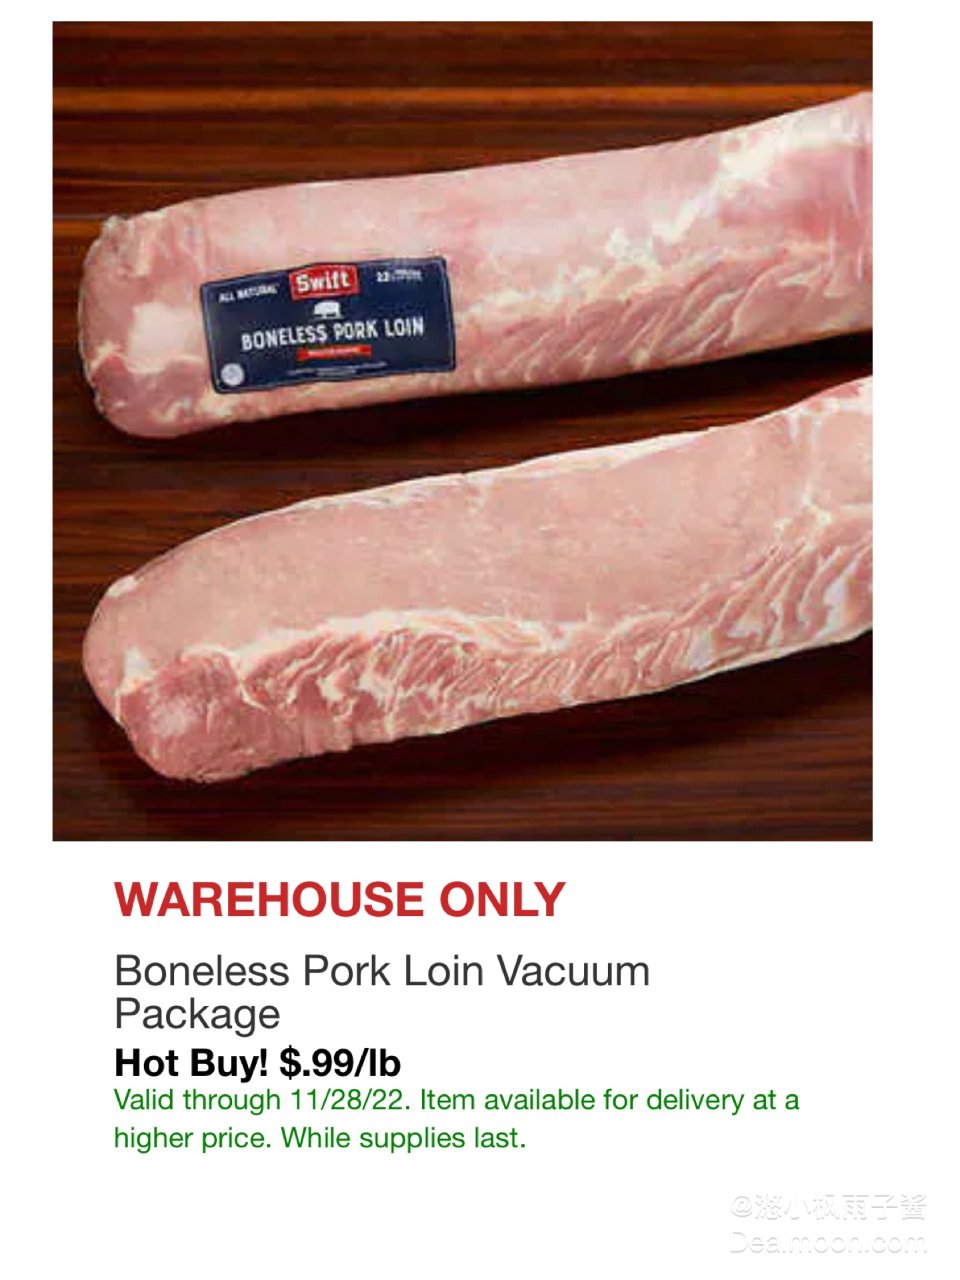 猪肉好价99美分一磅...